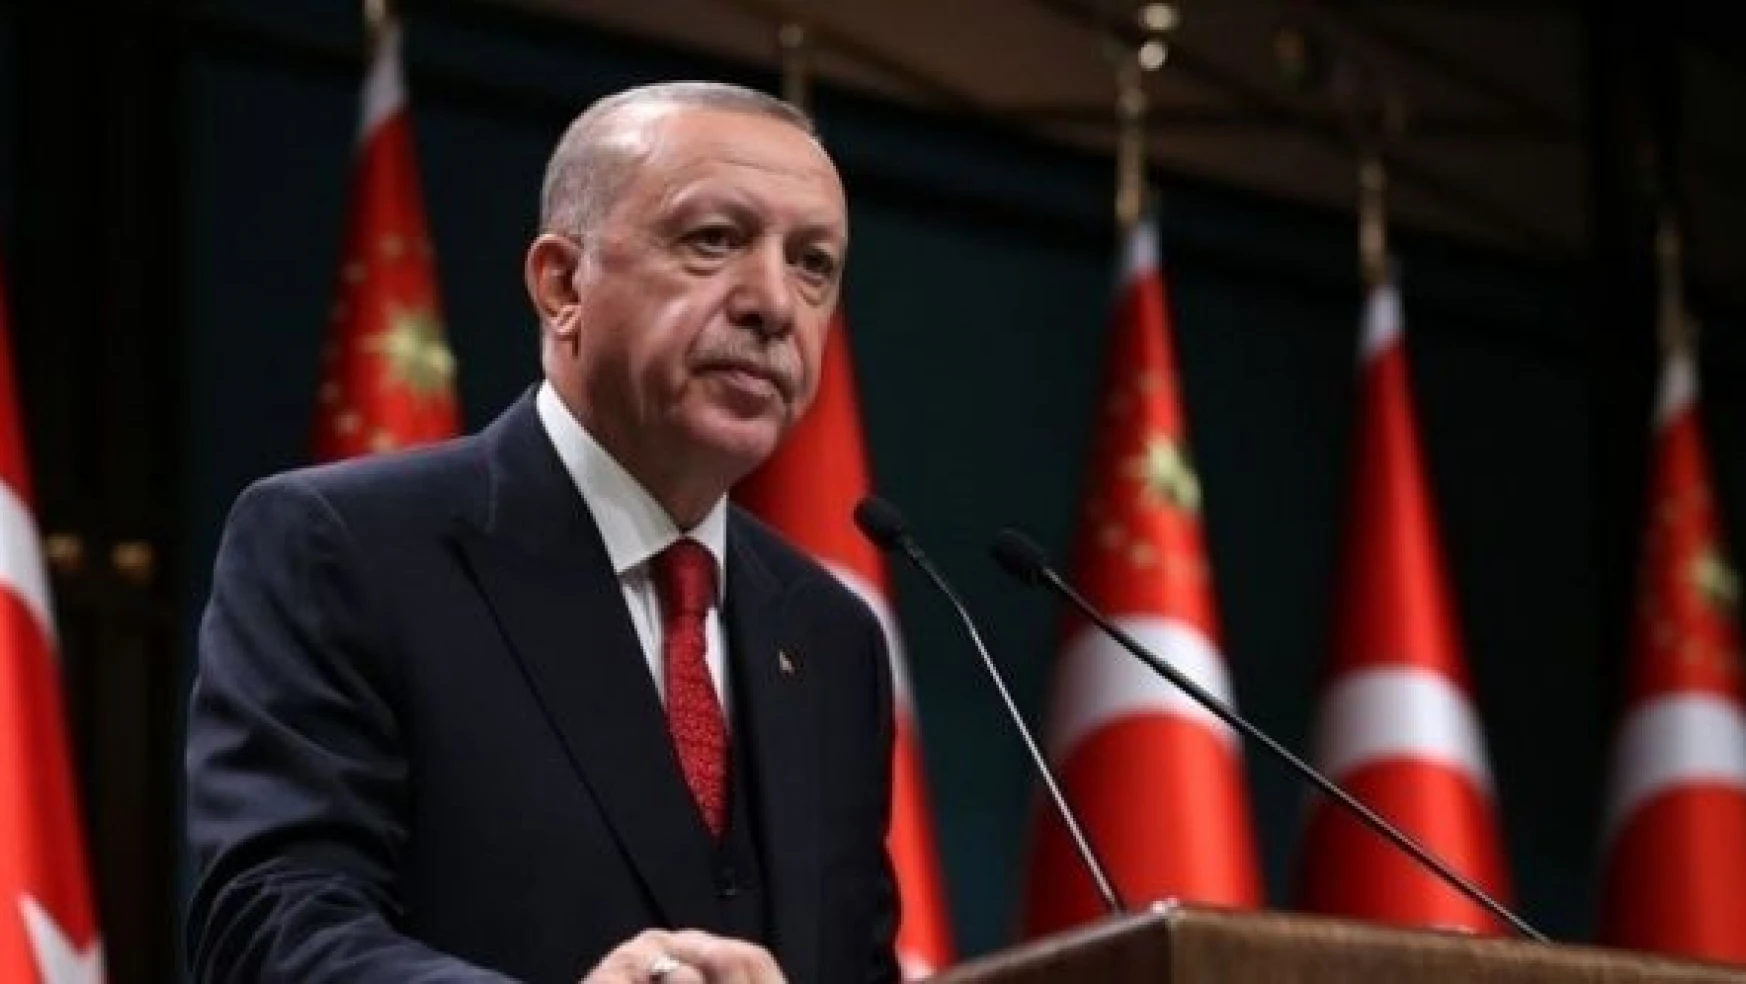 Cumhurbaşkanı Erdoğan, 2023 adaylığını resmen açıkladı